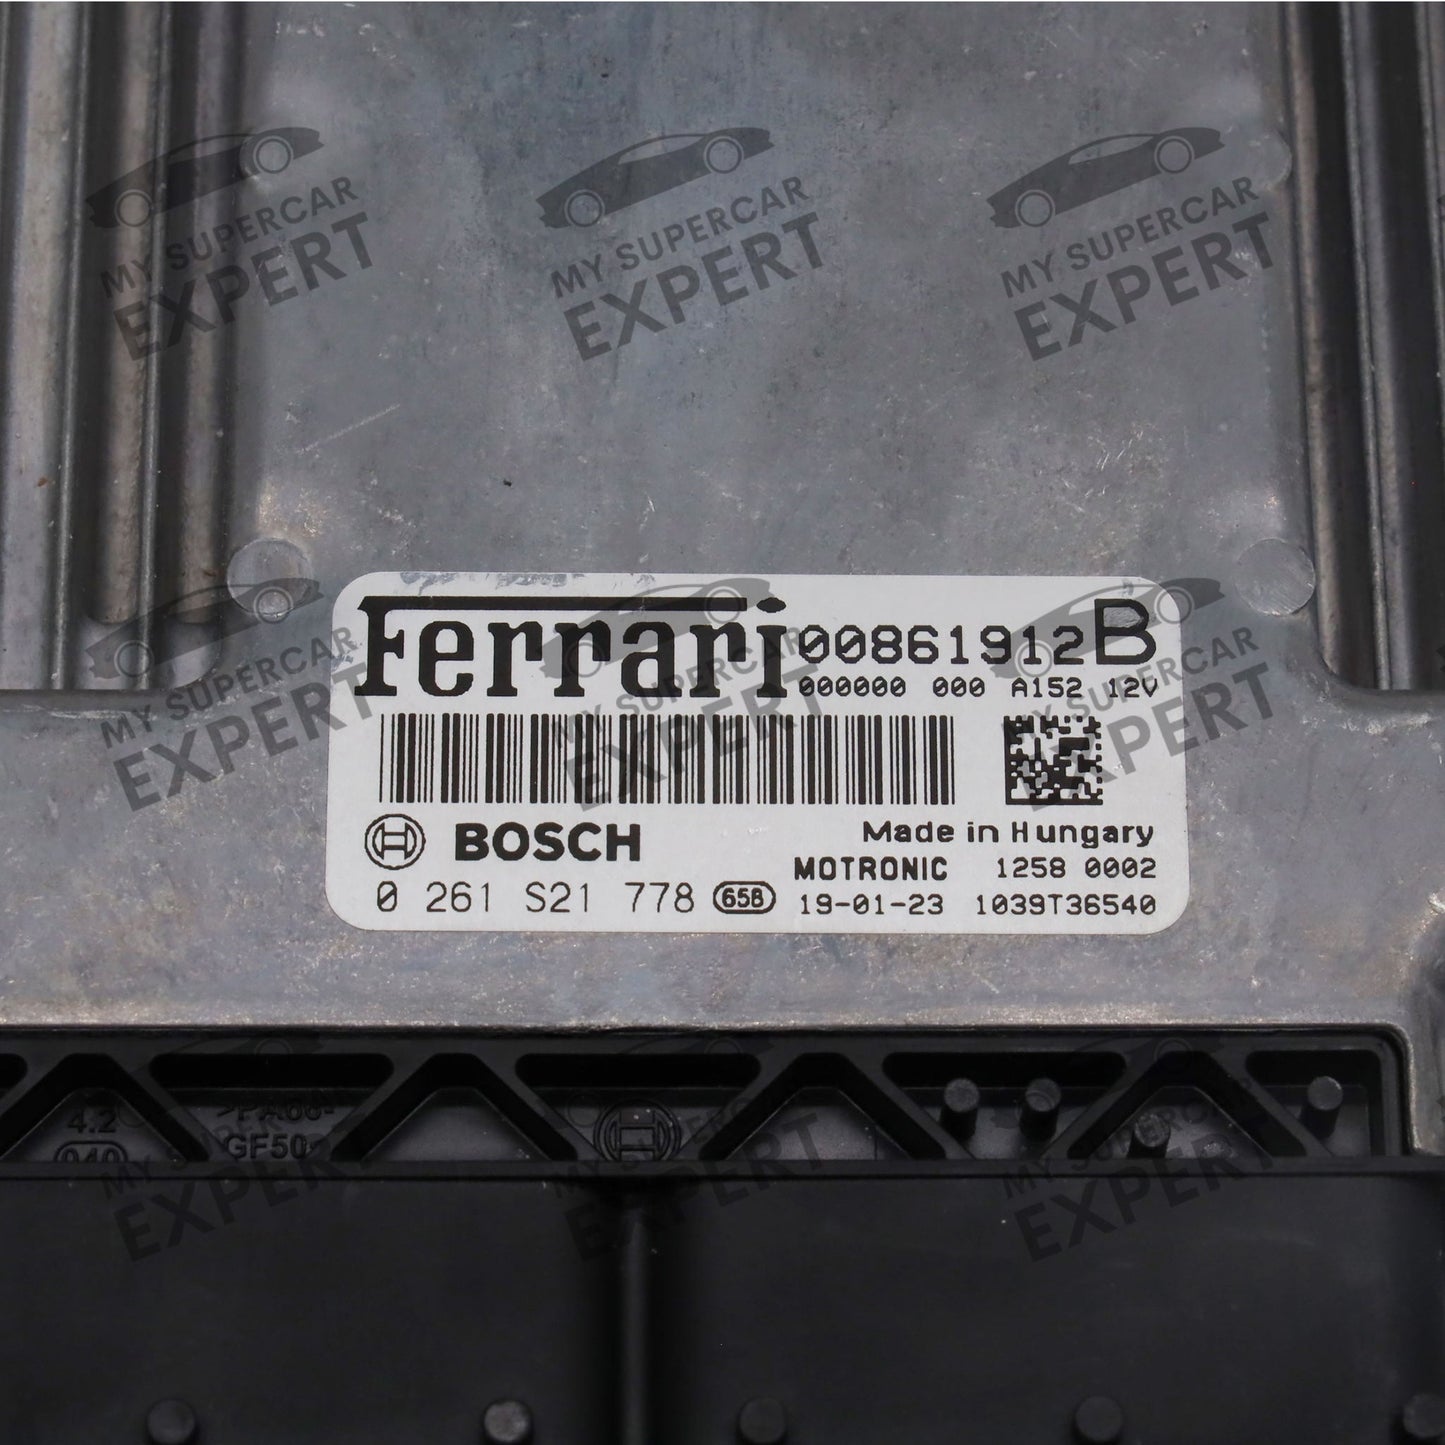 Ferrari 488 (F142M) F8 (F142MFL) 812 (F152M) GTC4Lusso (F151M) Portofino (F164) SF90 (F173) 2015-2023 Bosch MED17.3.5 ECU 00861912B 0261S21778 used